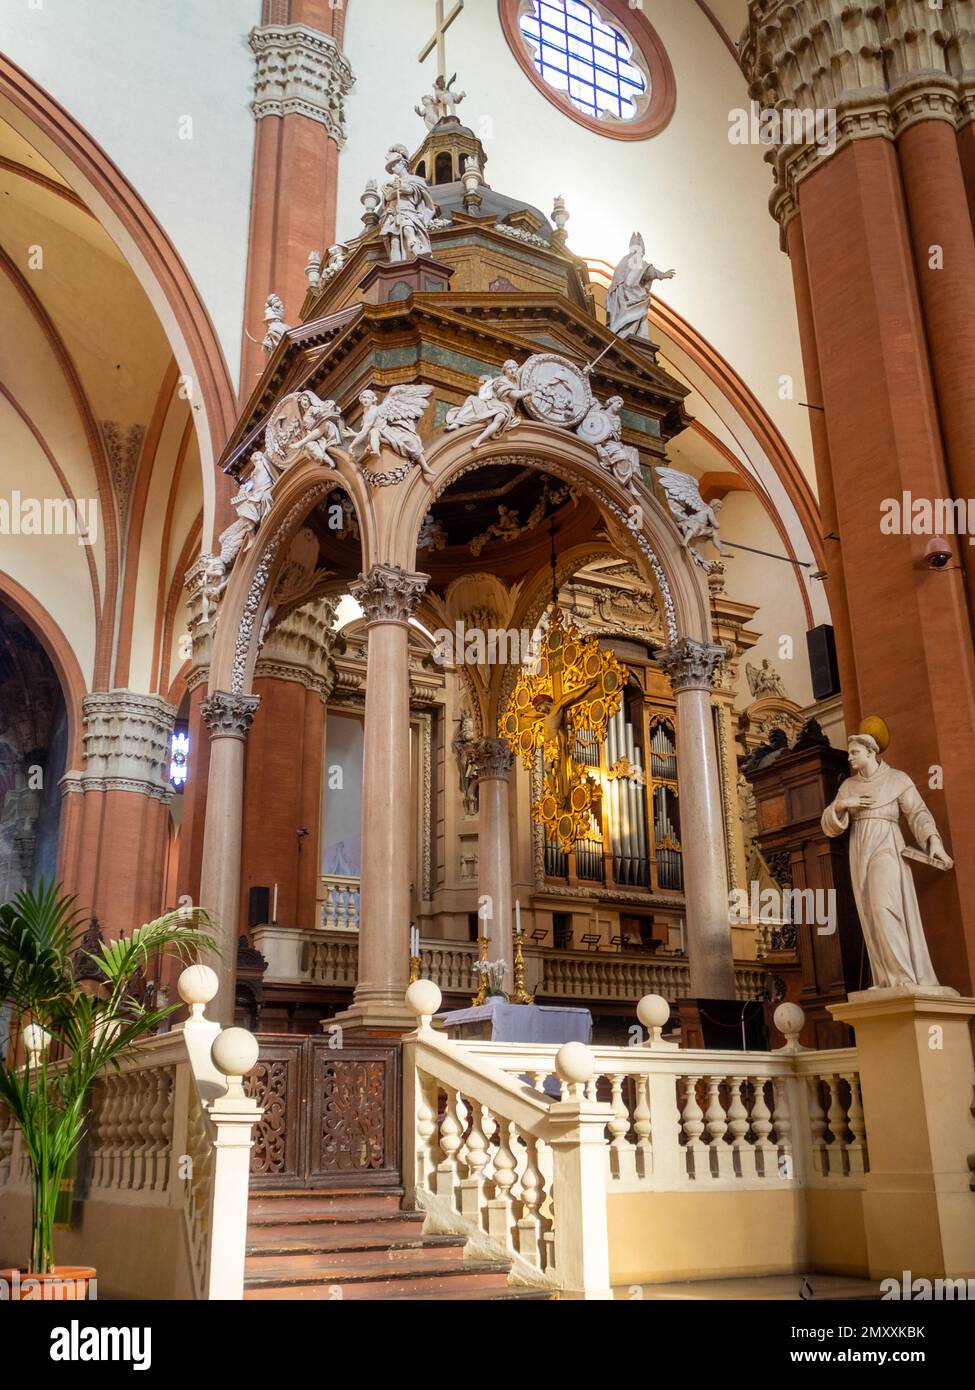 Side view of the ciborium and high altar of San Petronio Basilica, Bologna Stock Photo